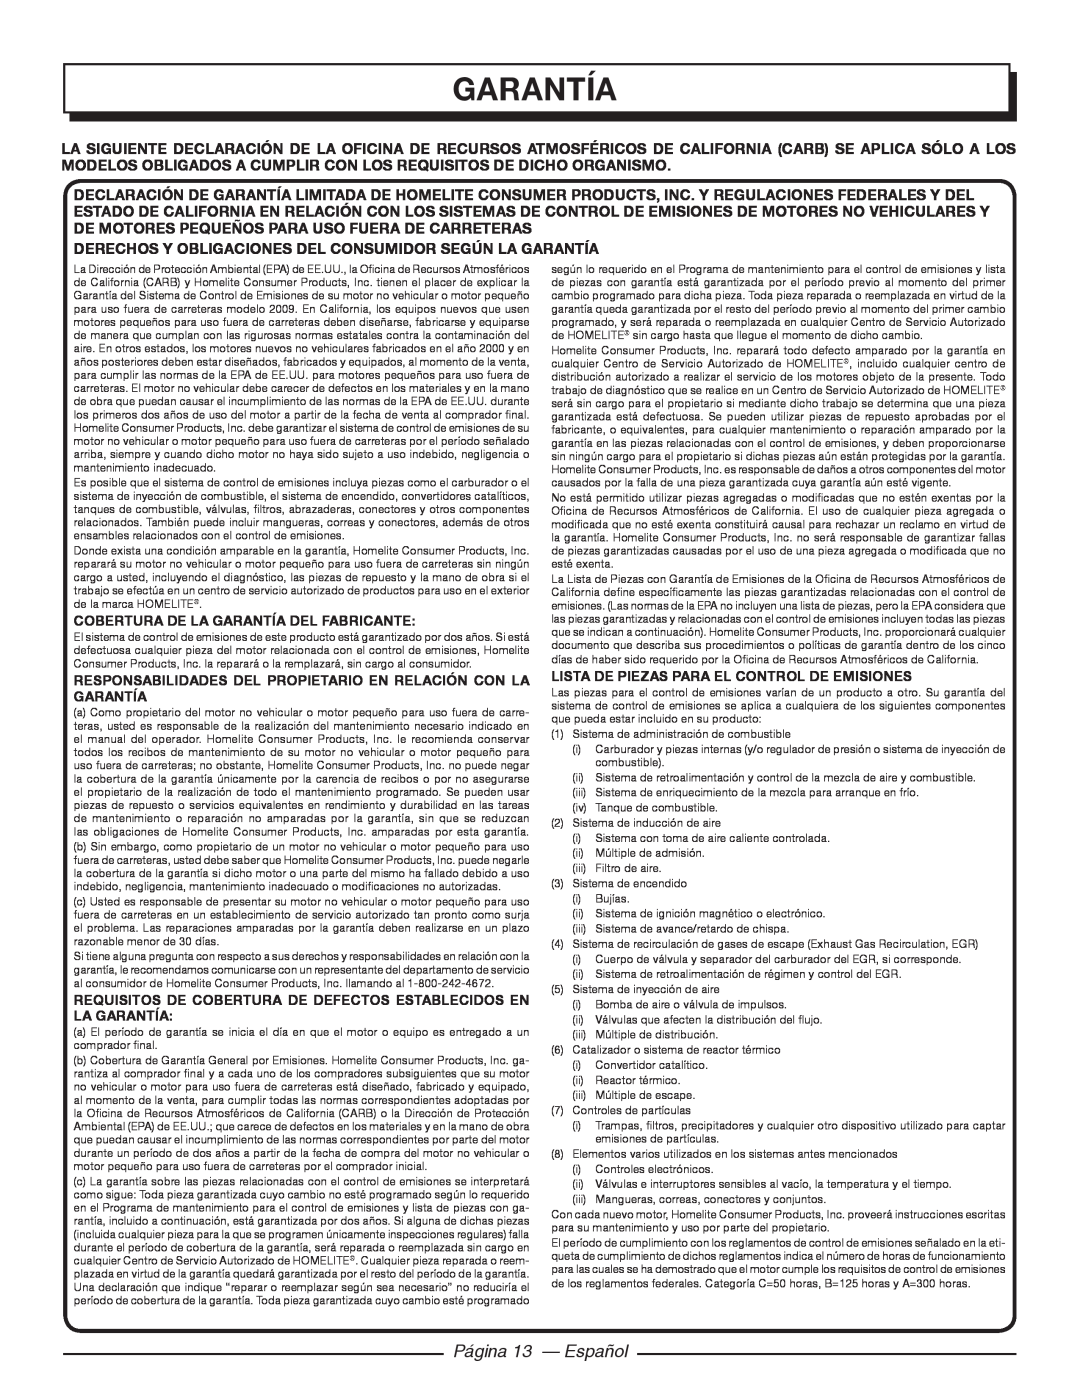 Homelite UT21006 garantía, Página 13 - Español, Derechos Y Obligaciones Del Consumidor Según La Garantía 